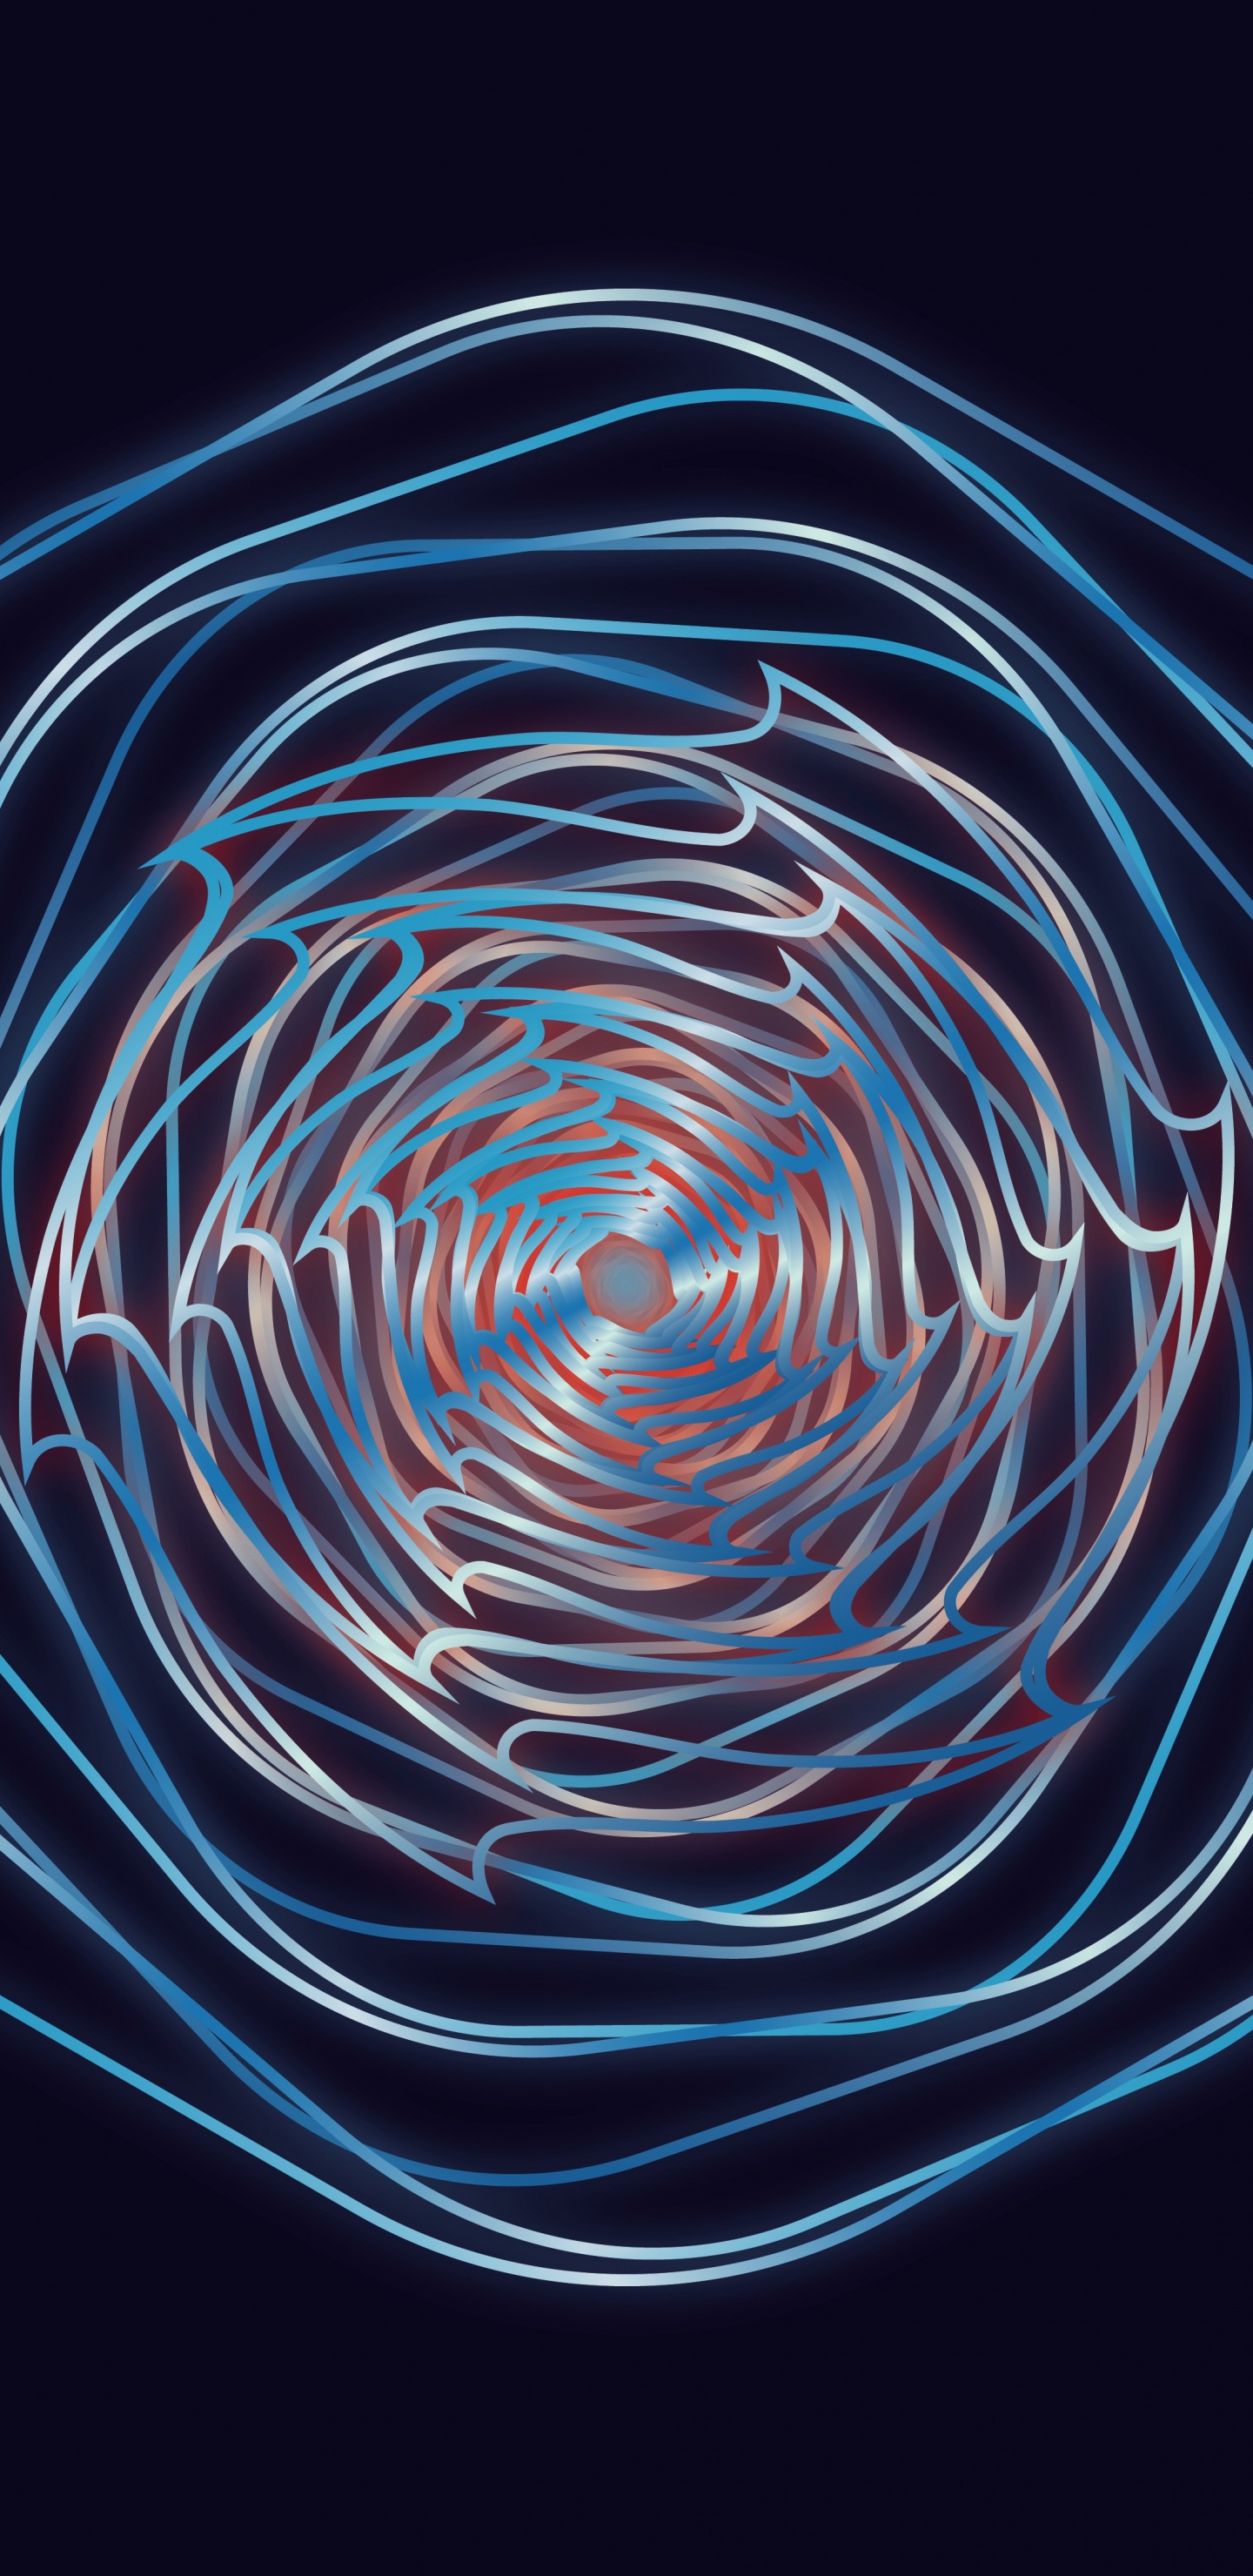 Blaues Und Weißes Spirallicht. Wallpaper in 1440x2960 Resolution